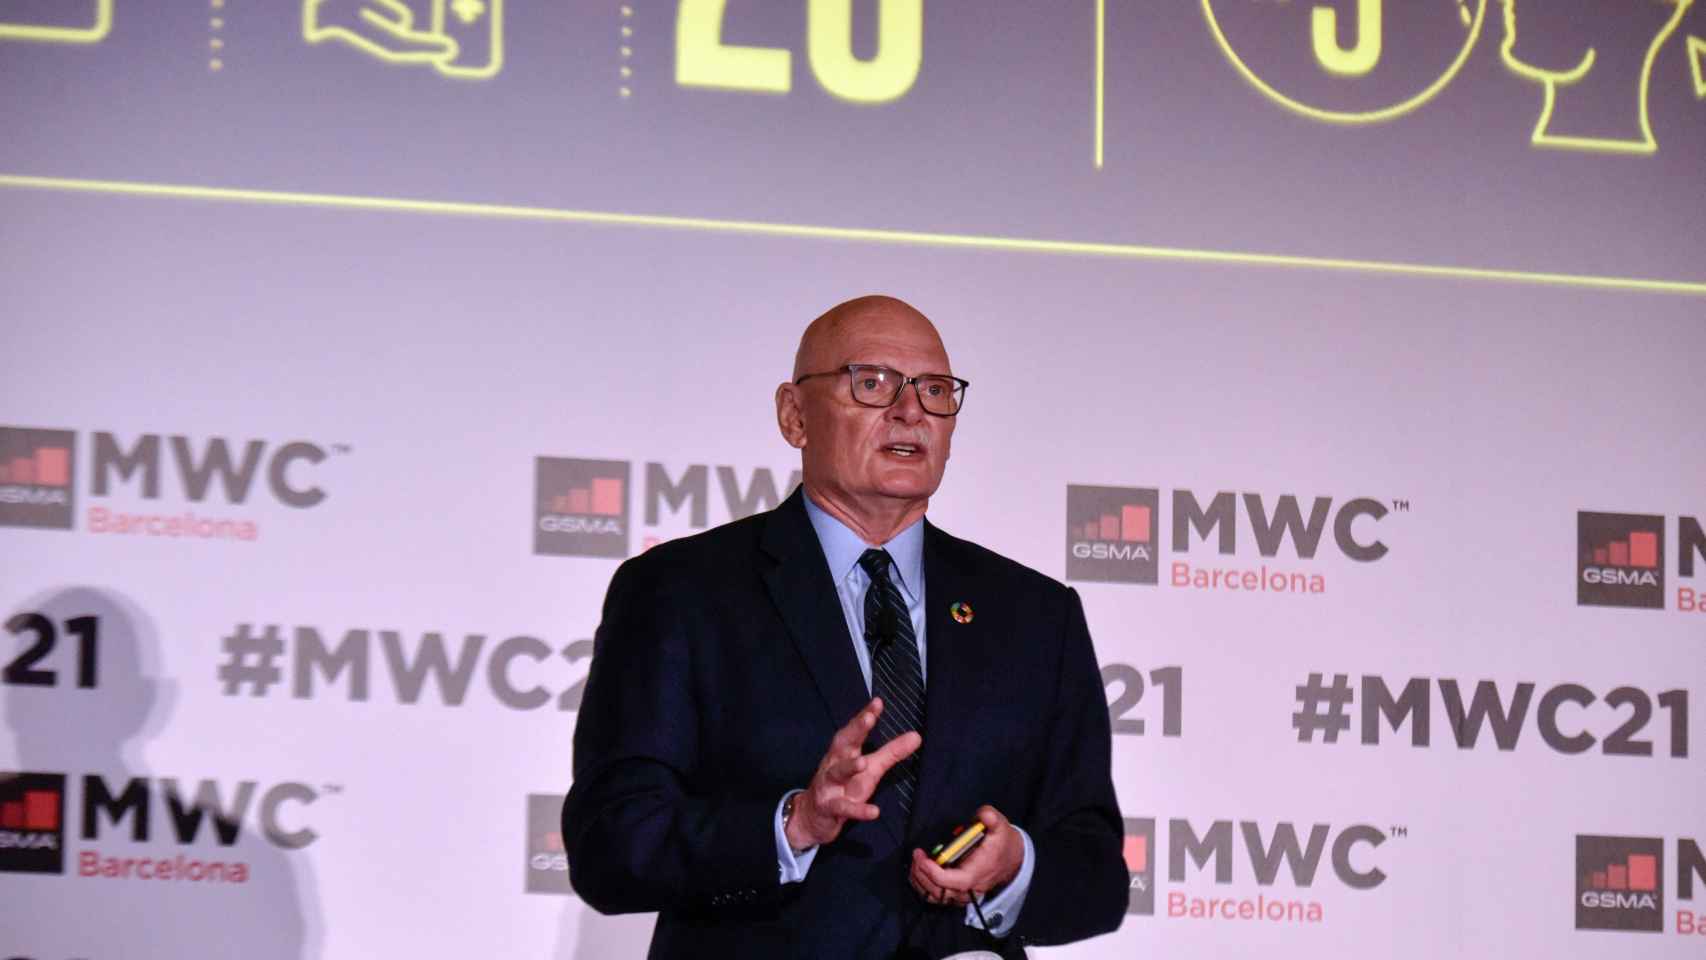 El CEO de la GSMA, John Hoffman, en una presentación de la edición del Mobile World Congress de 2021 / David Oller - EUROPA PRESS